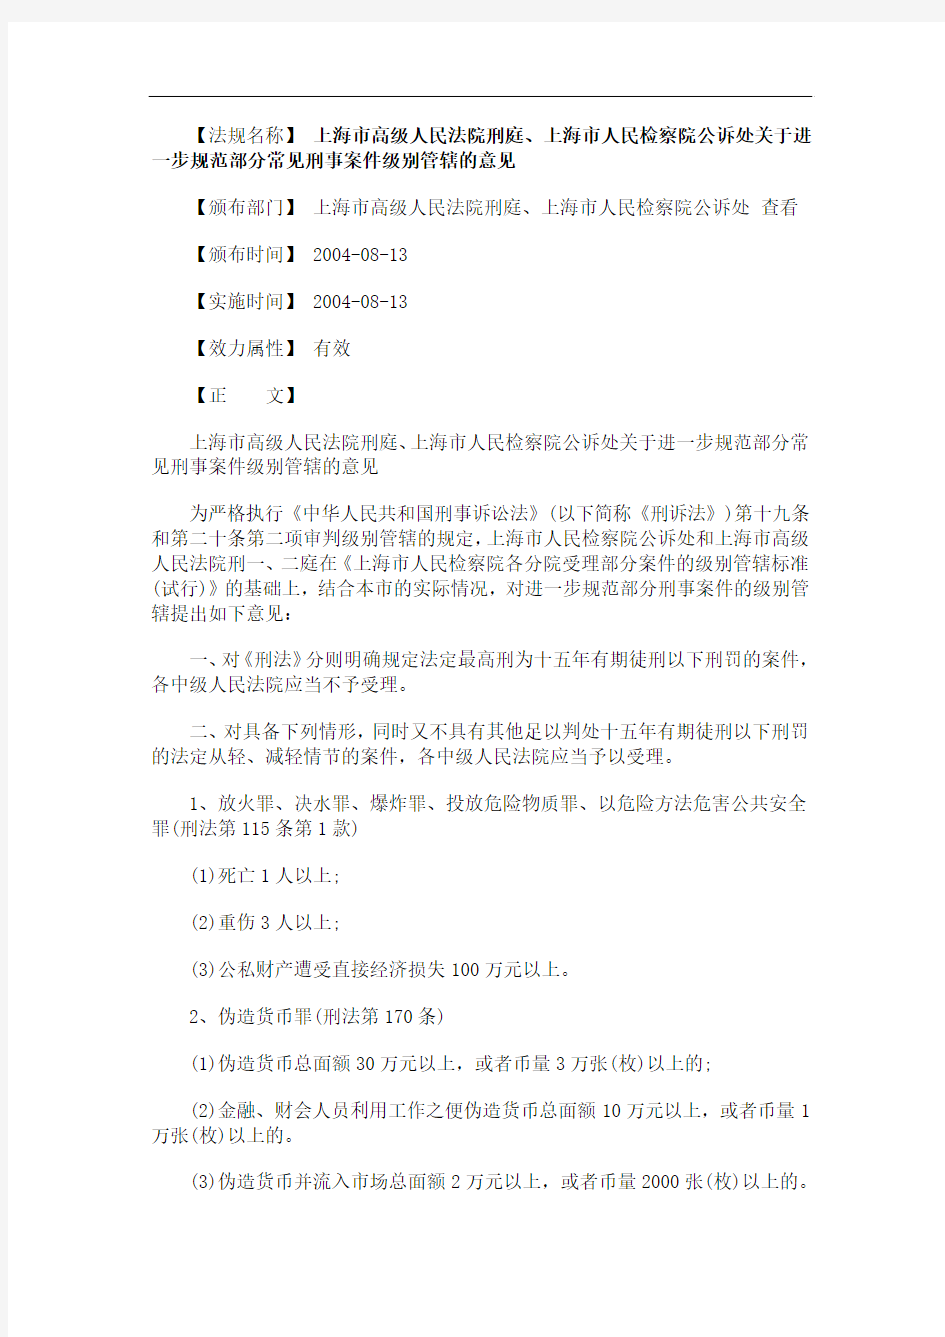 的意见上海市高级人民法院刑庭、上海市人民检察院公诉处关于进一步规范部分常见刑事案件级别管辖